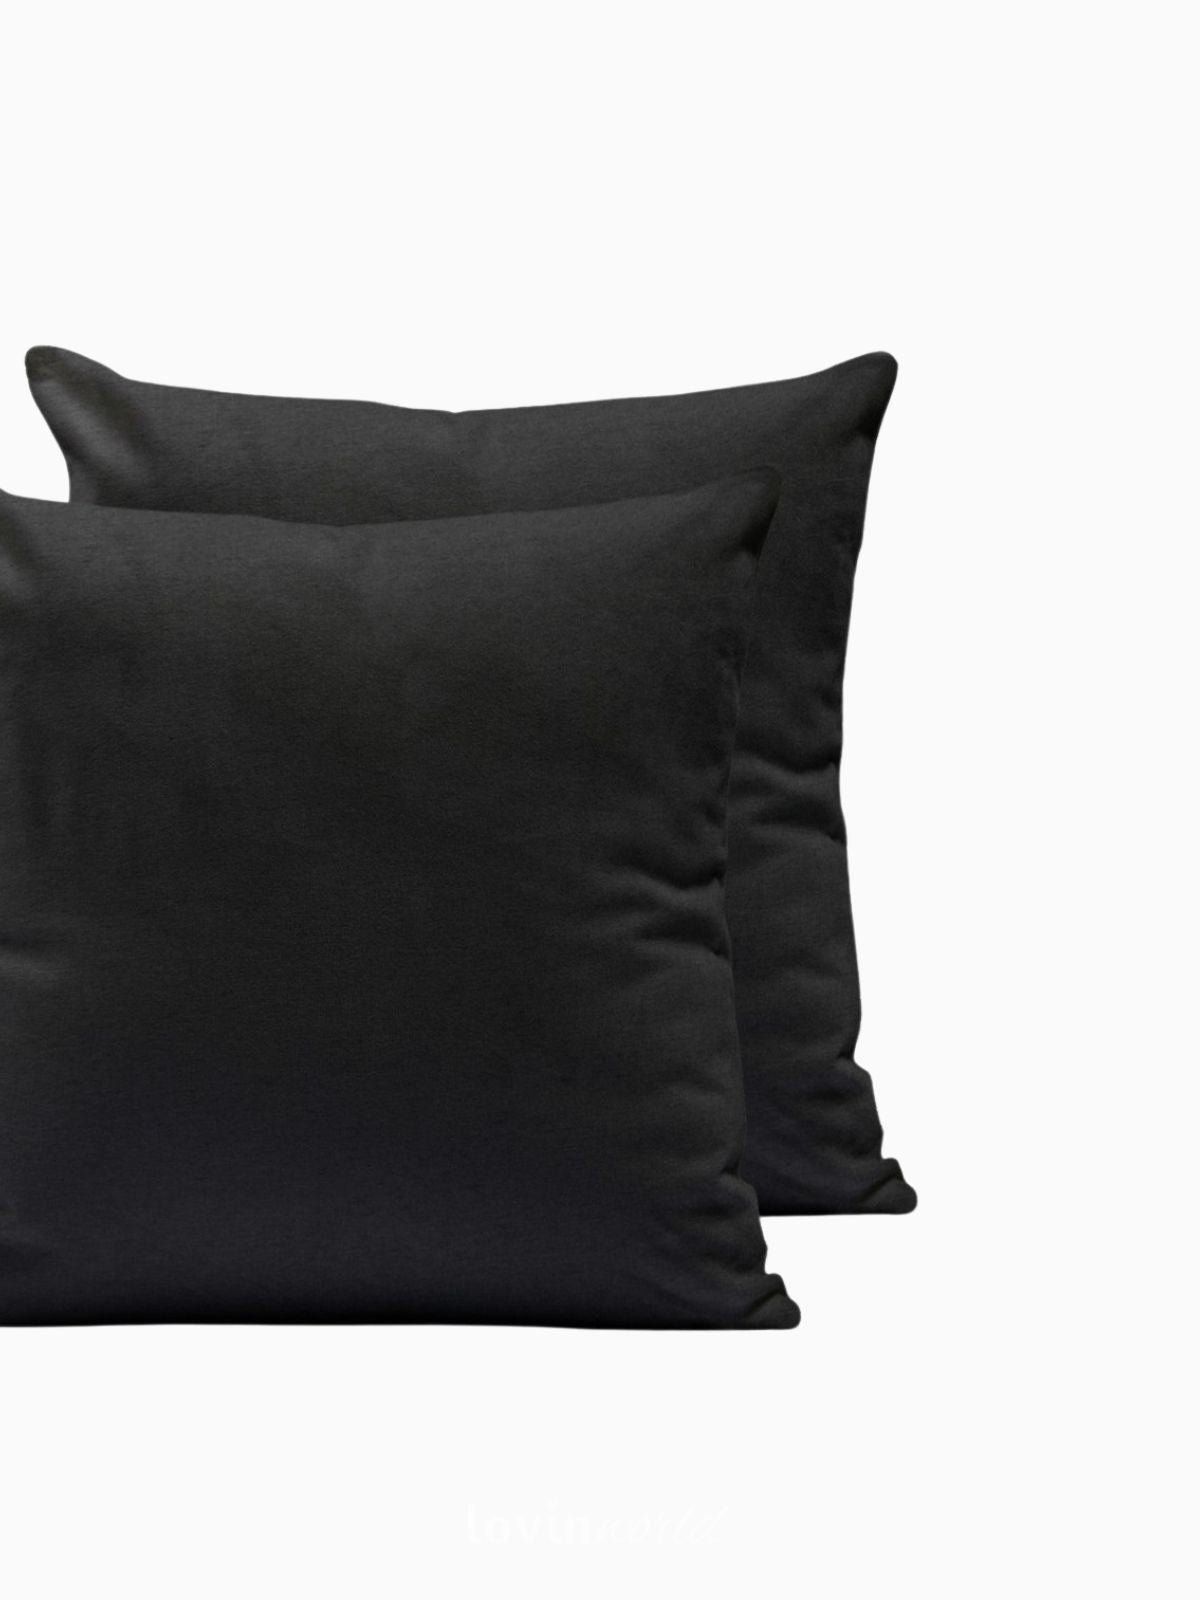 2 Federe per cuscino Amber in colore nero 50x50 cm.